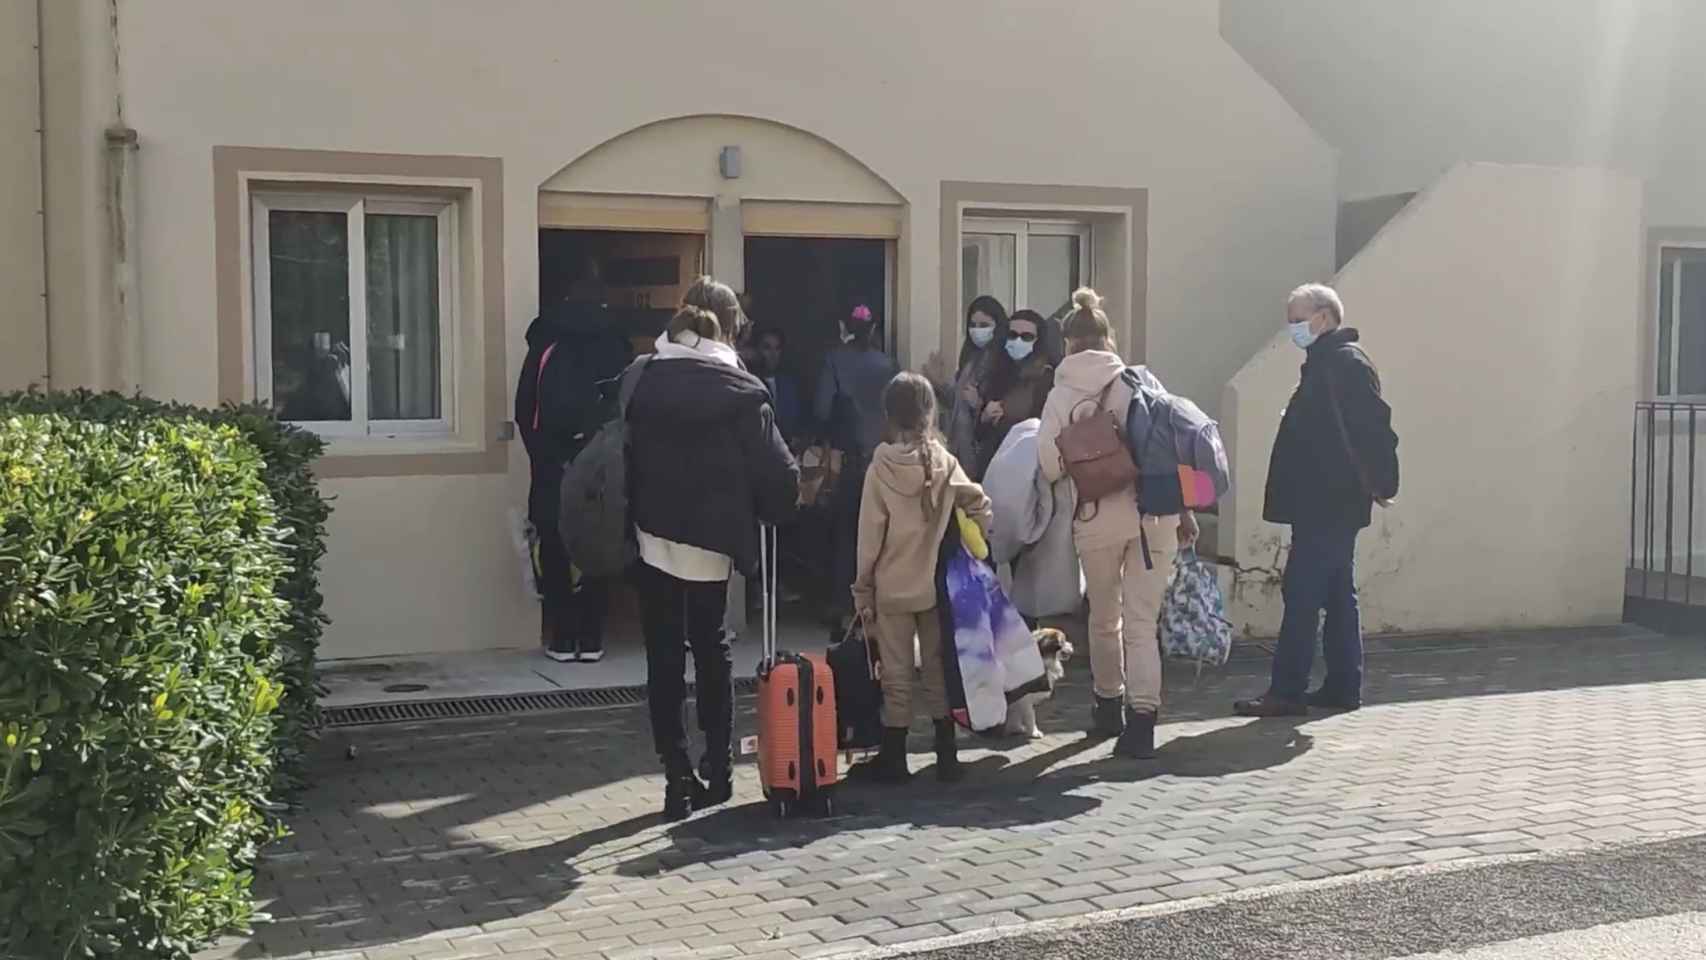 Los refugiados entrando en su nuevo hogar.